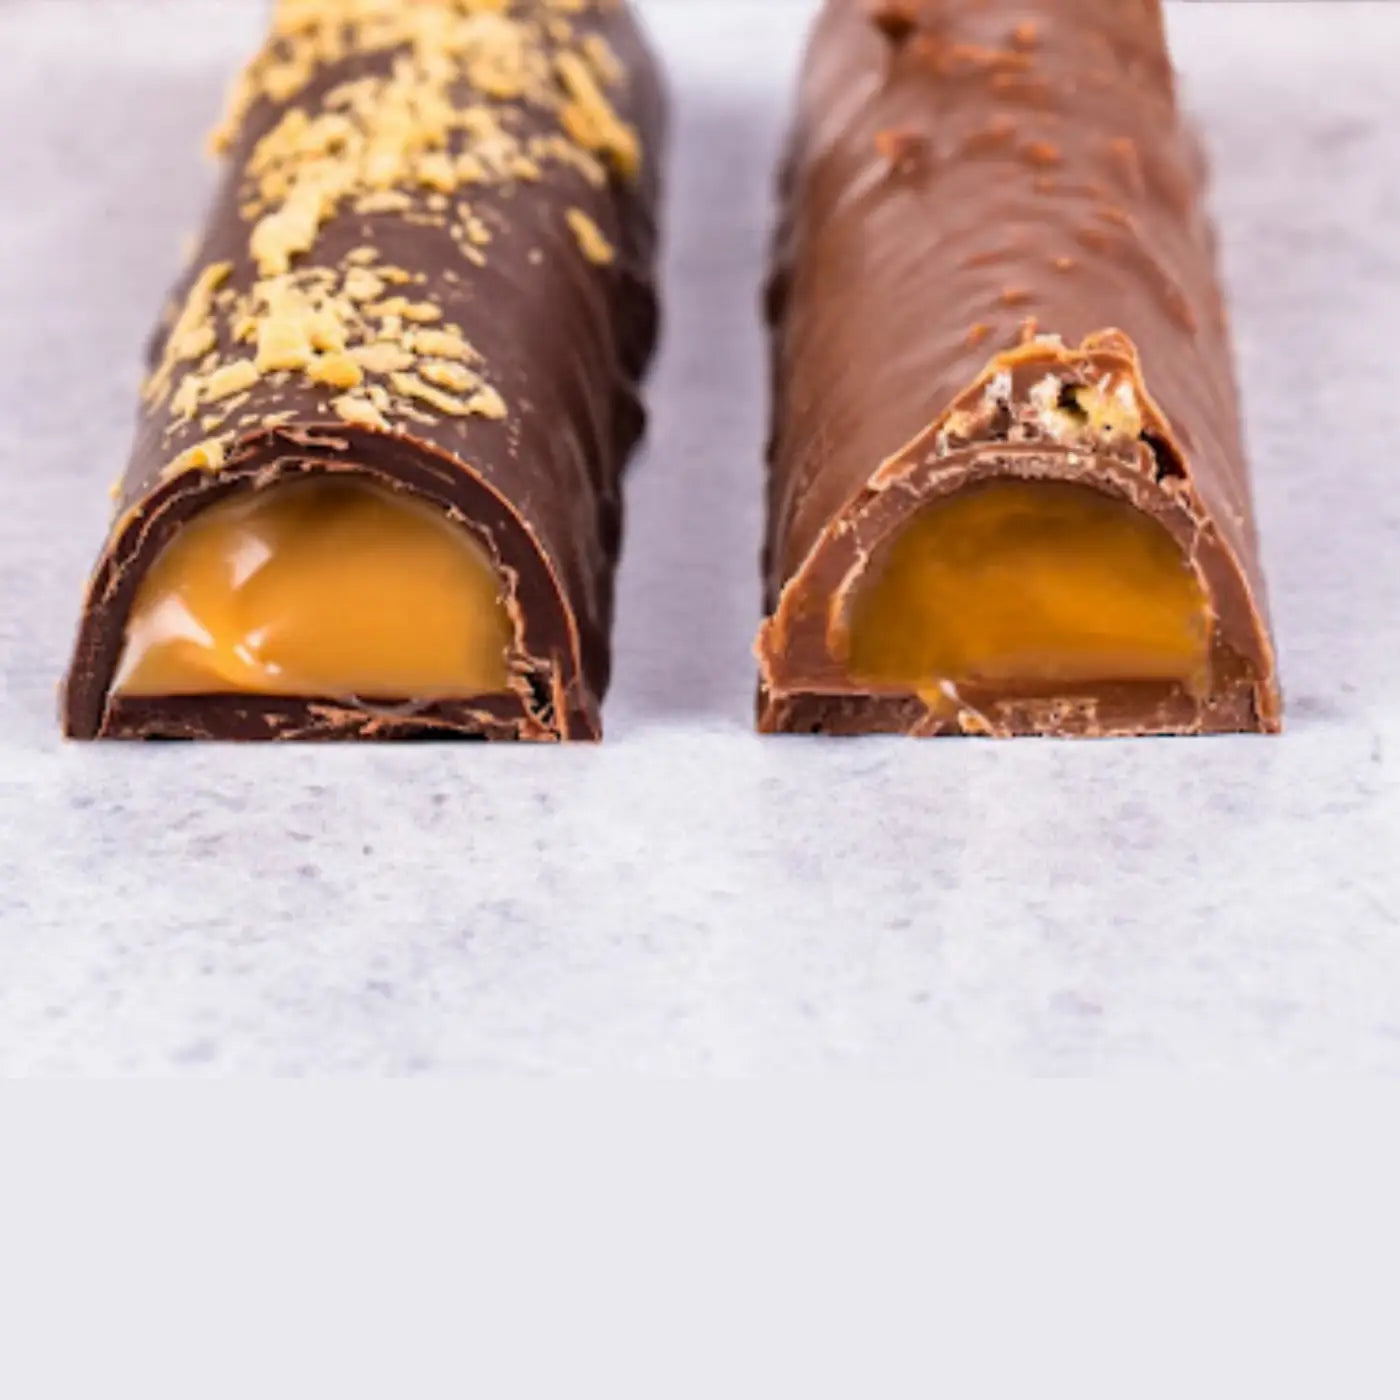 Dark Chocolate Maple Bar by Chocolate Boréal, 45g